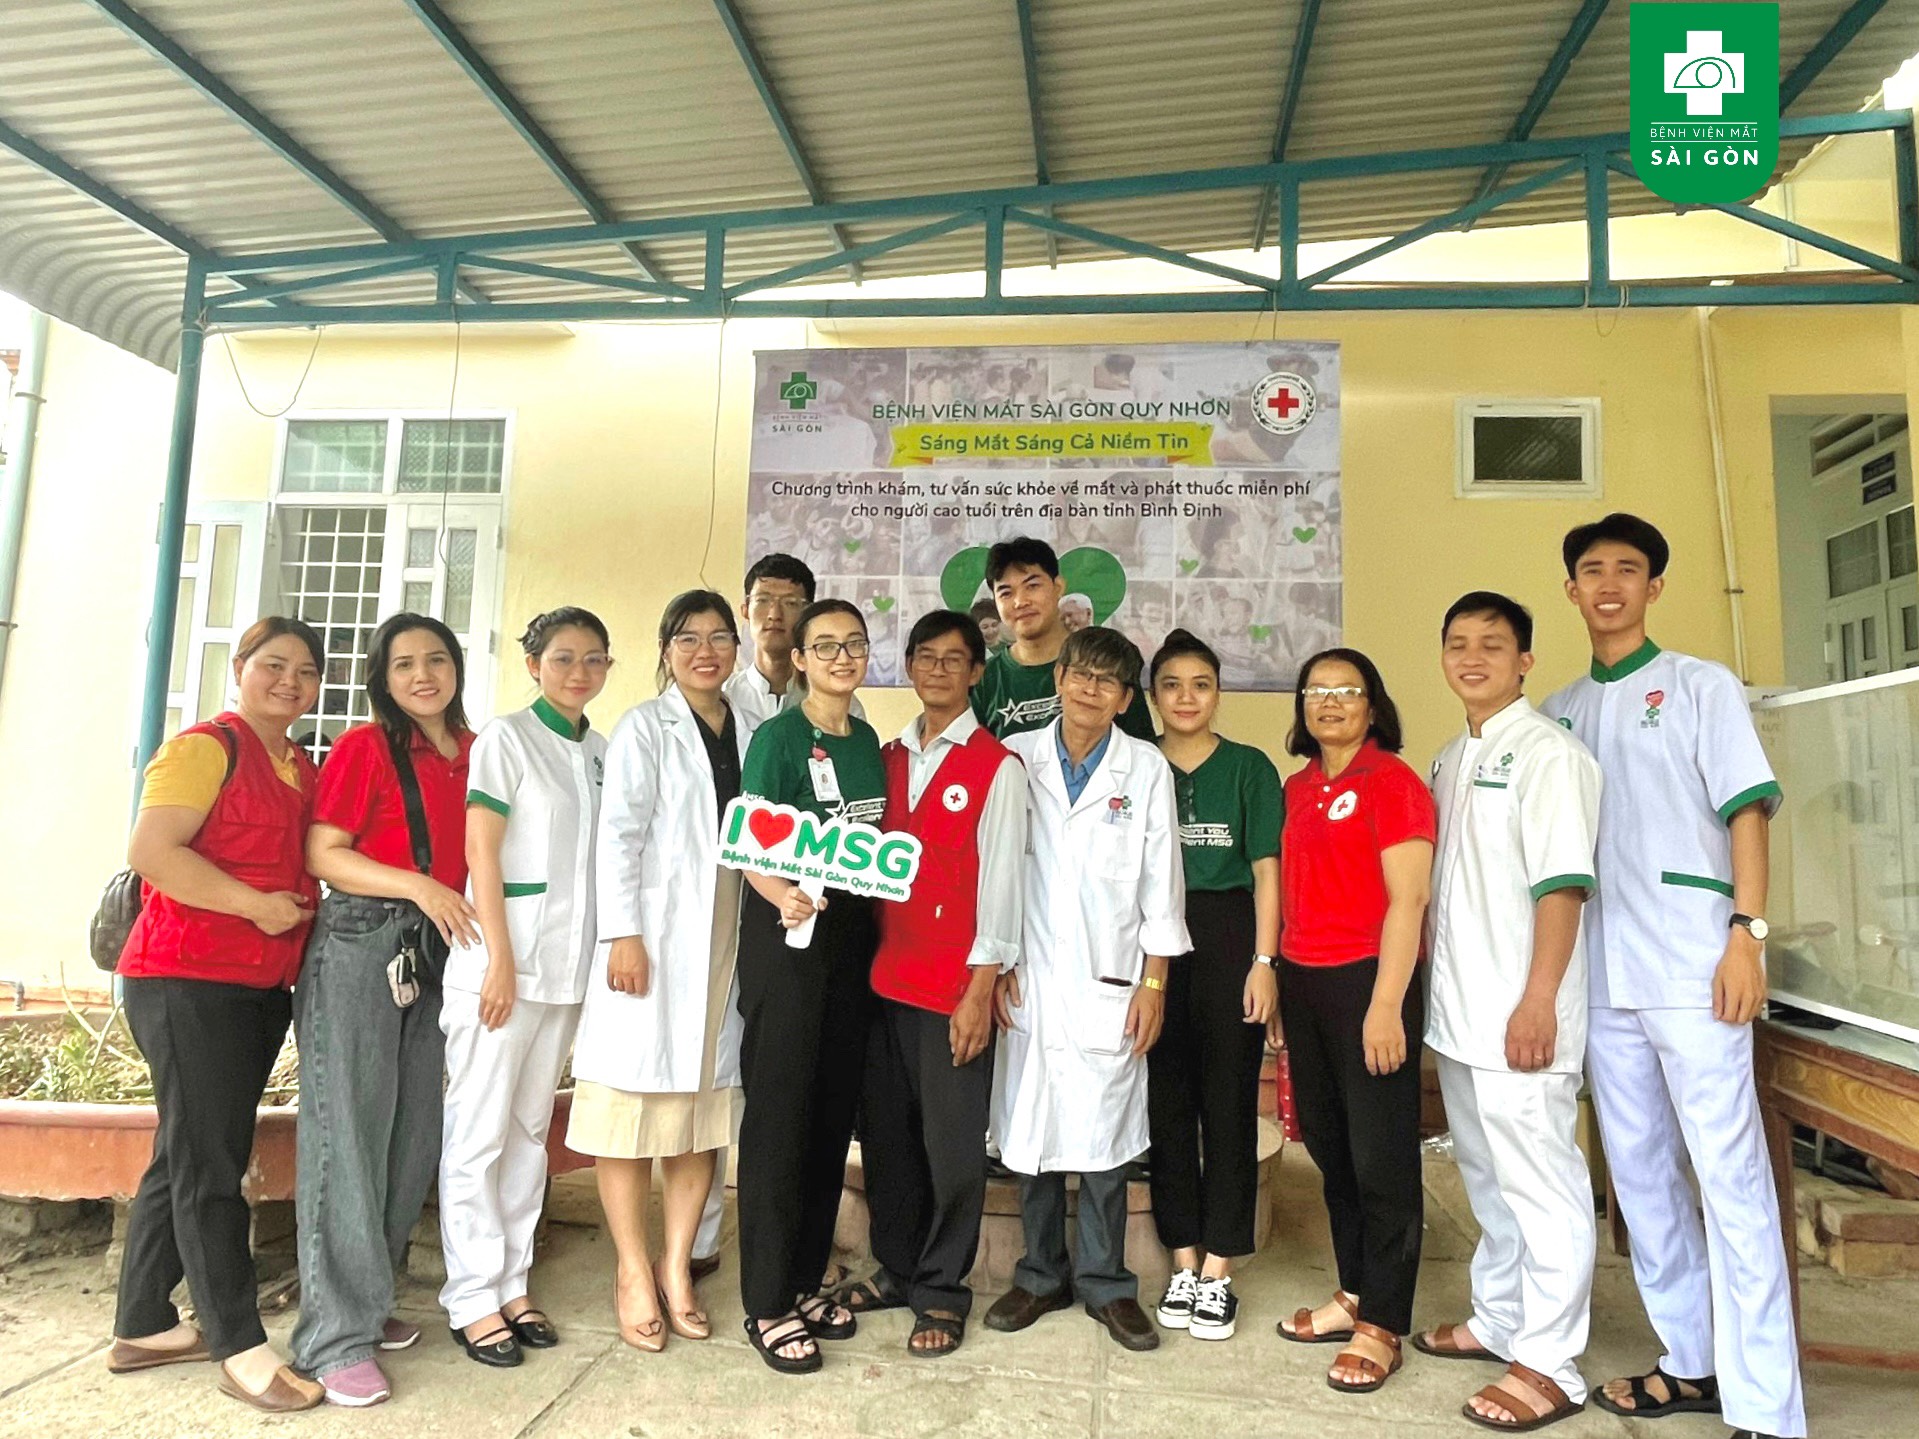 Chuyến xe vì cộng đồng "Sáng mắt sáng cả niềm tin'' sáng nay tiếp tục lăn bánh đến trao gửi yêu thương cho người dân trên địa bàn huyện Tuy Phước